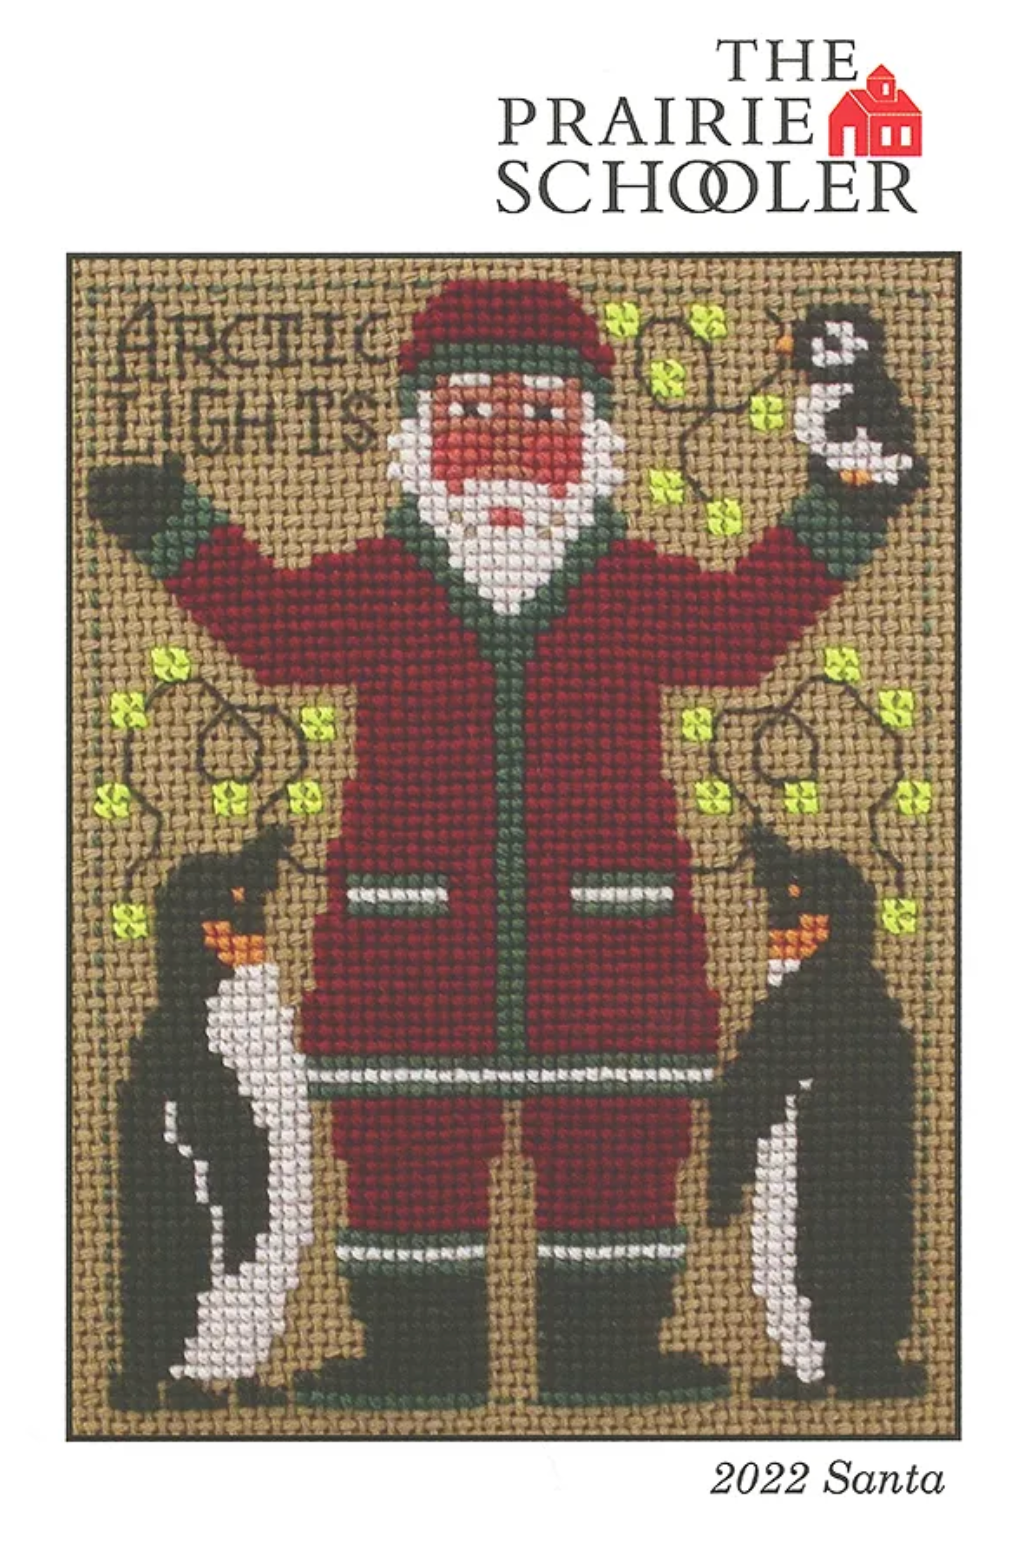 The Prairie Schooler - 2022 Santa